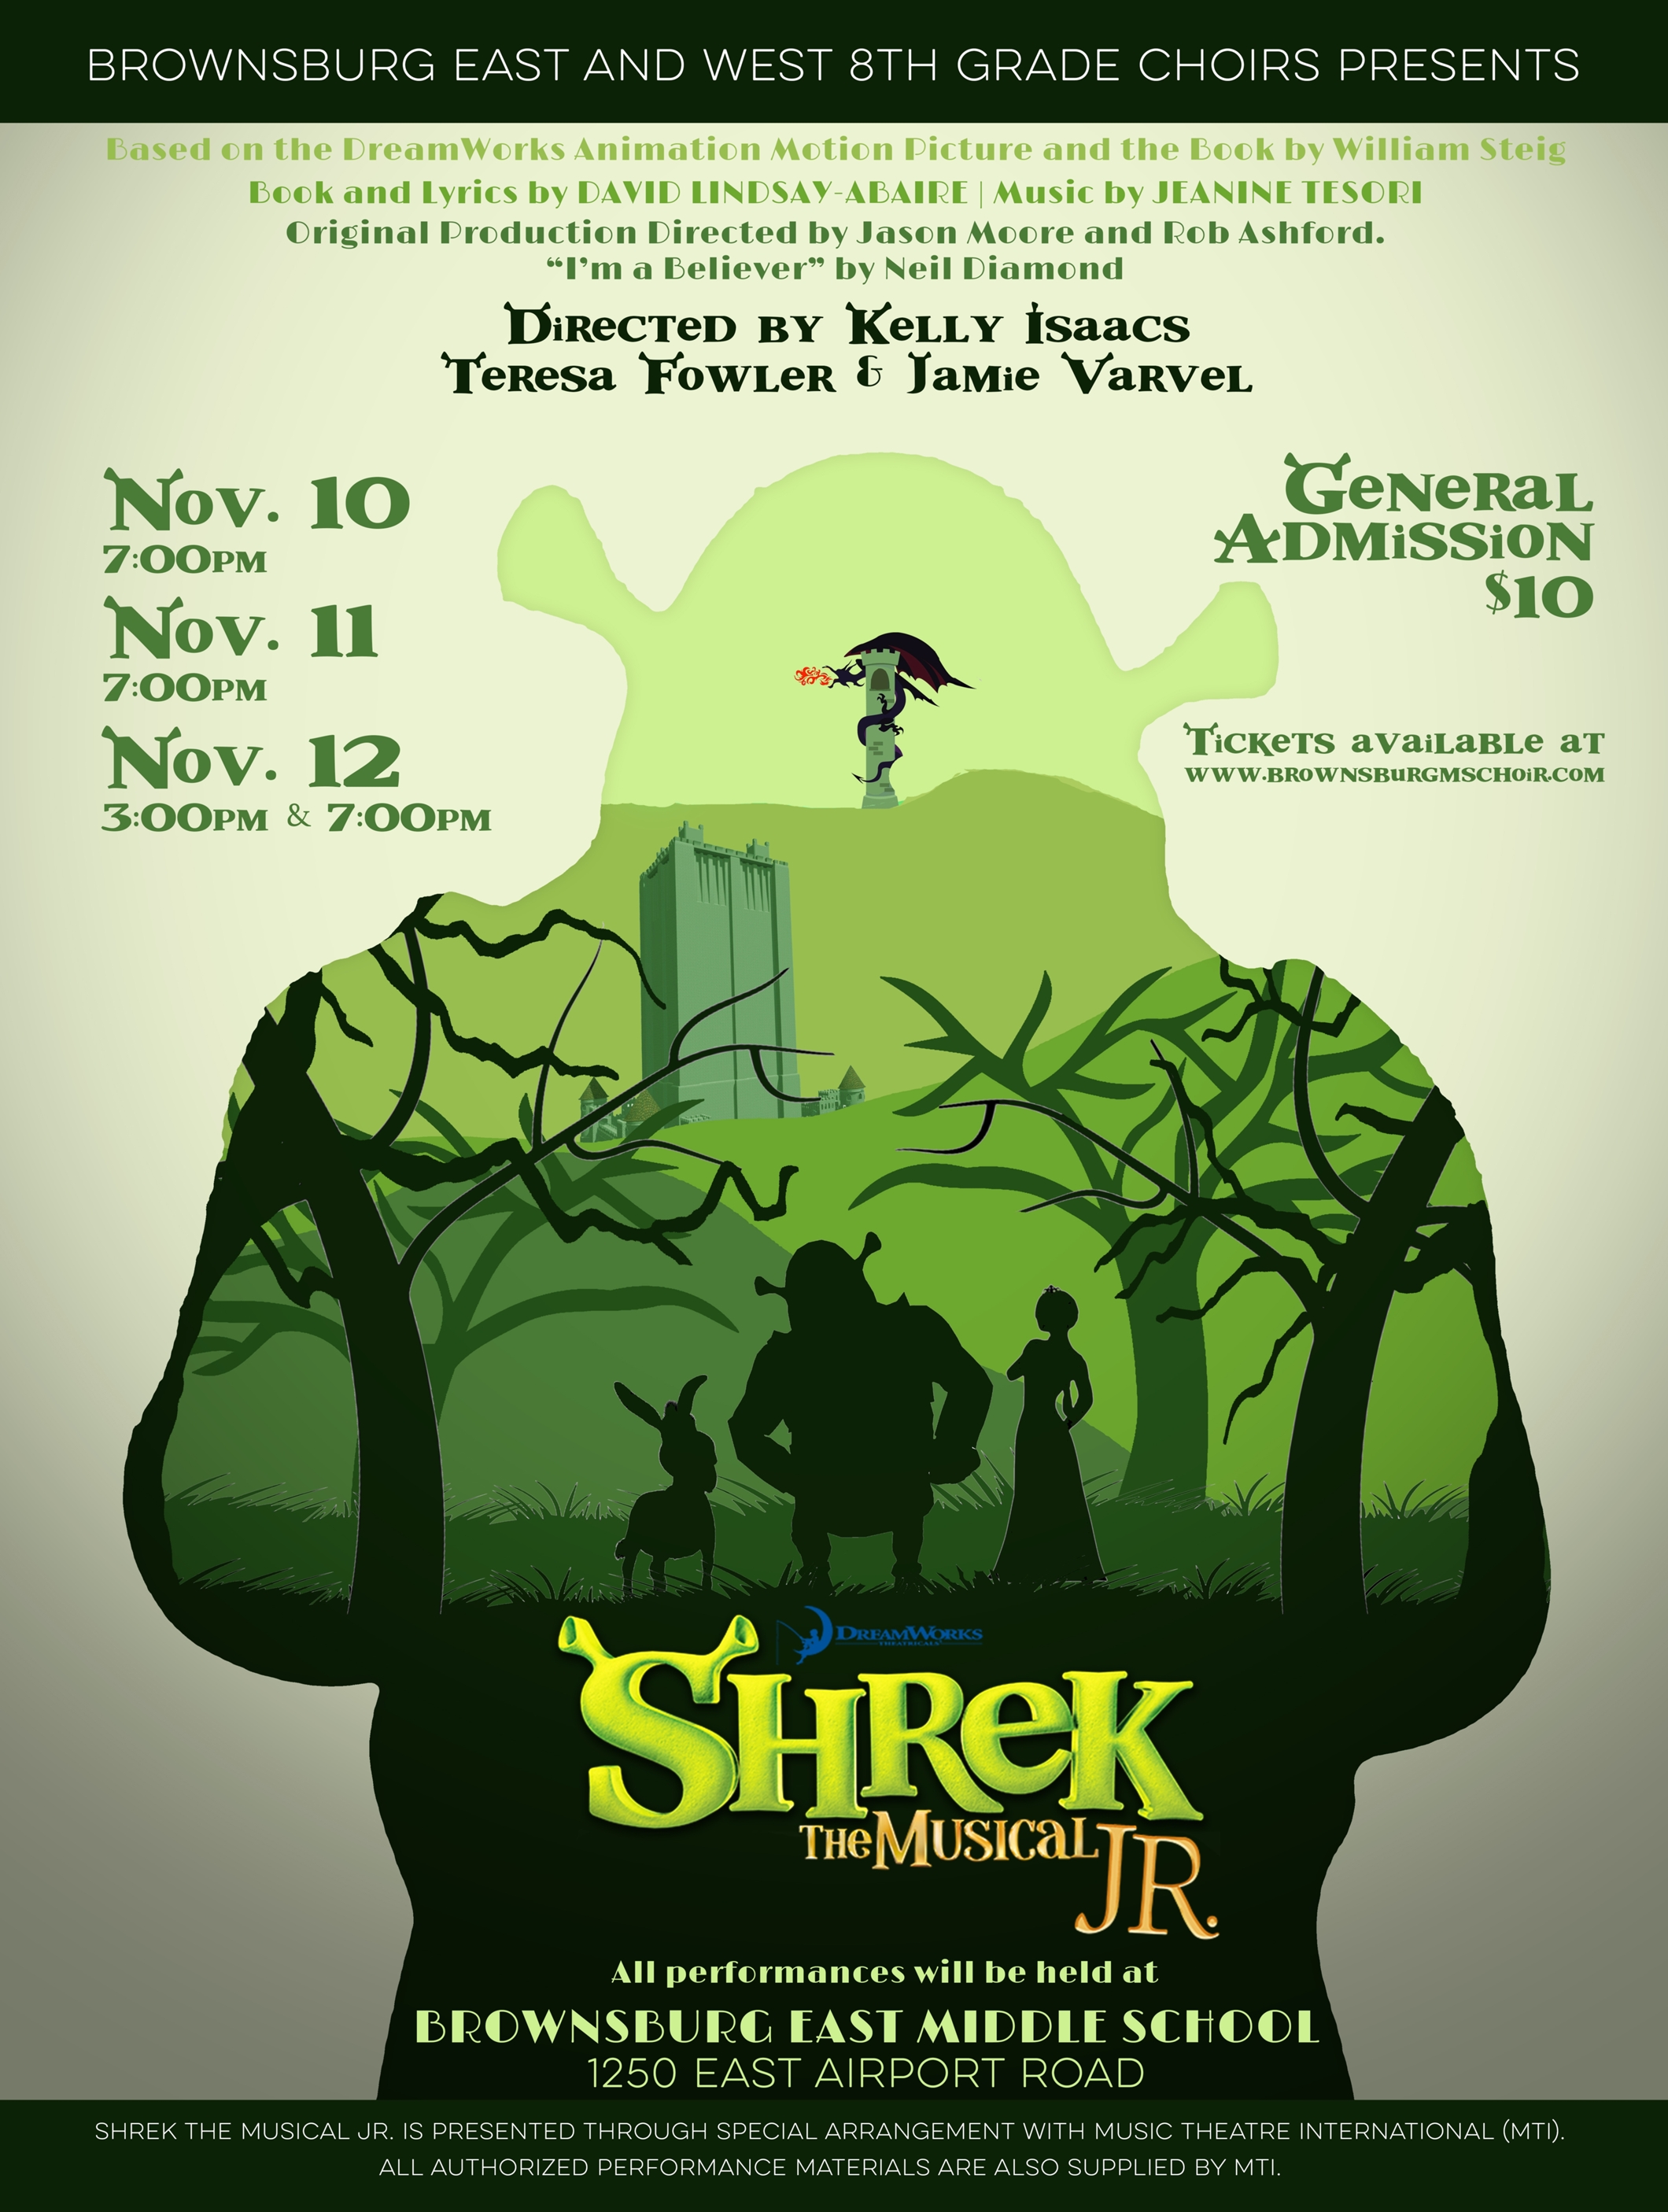 shrek the musical movie poster